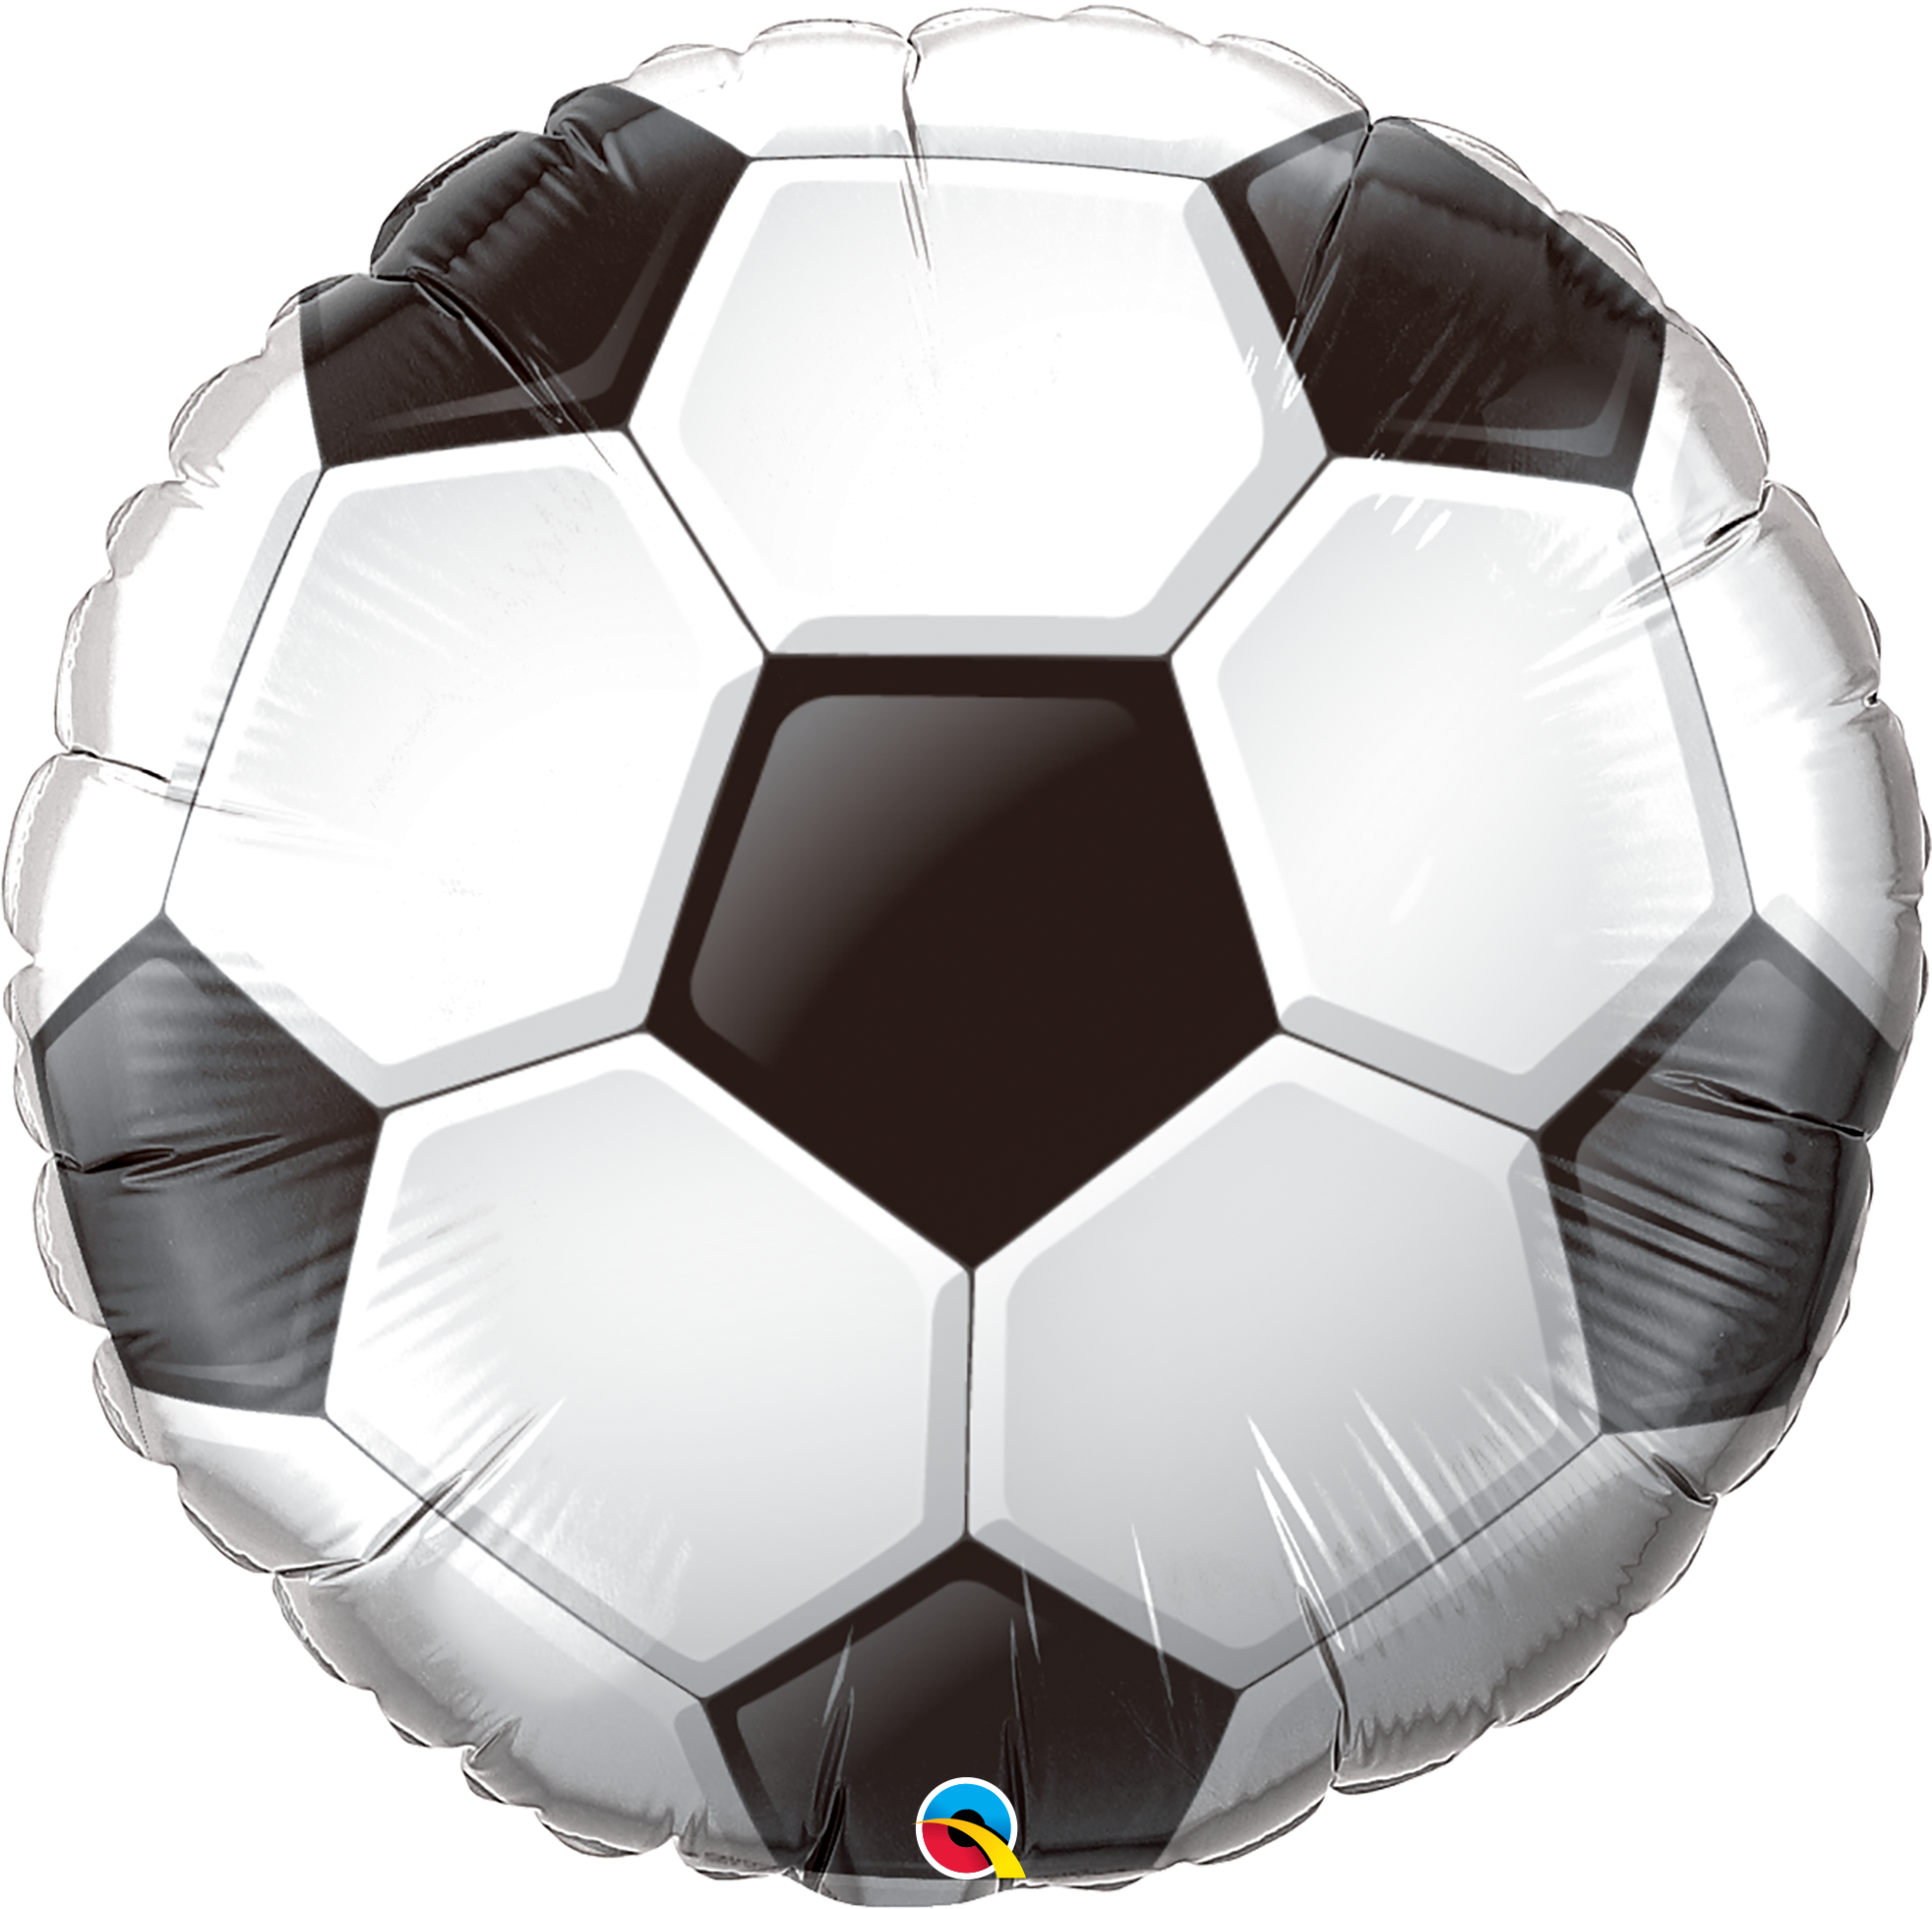 36" Soccer Ball